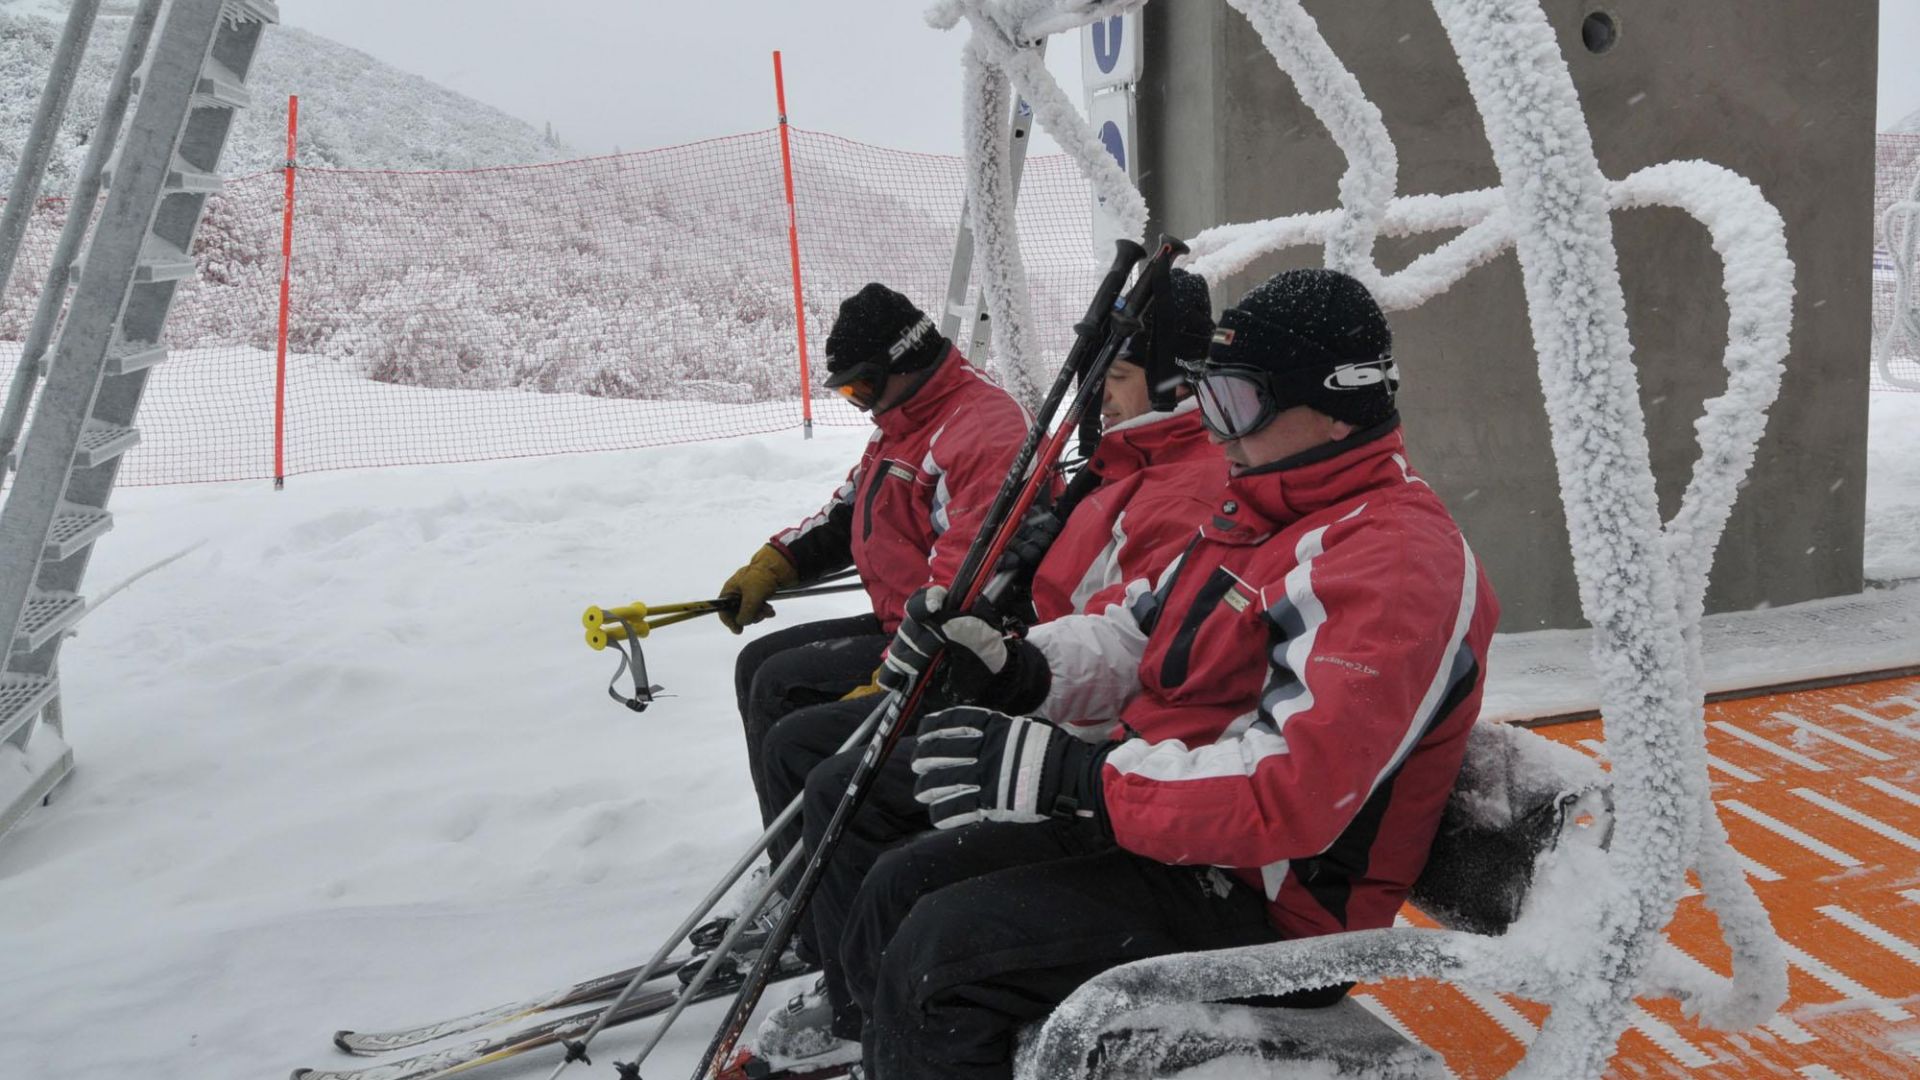 Близо 3 часа планинските спасители издирваха сноубордист отклонил се от